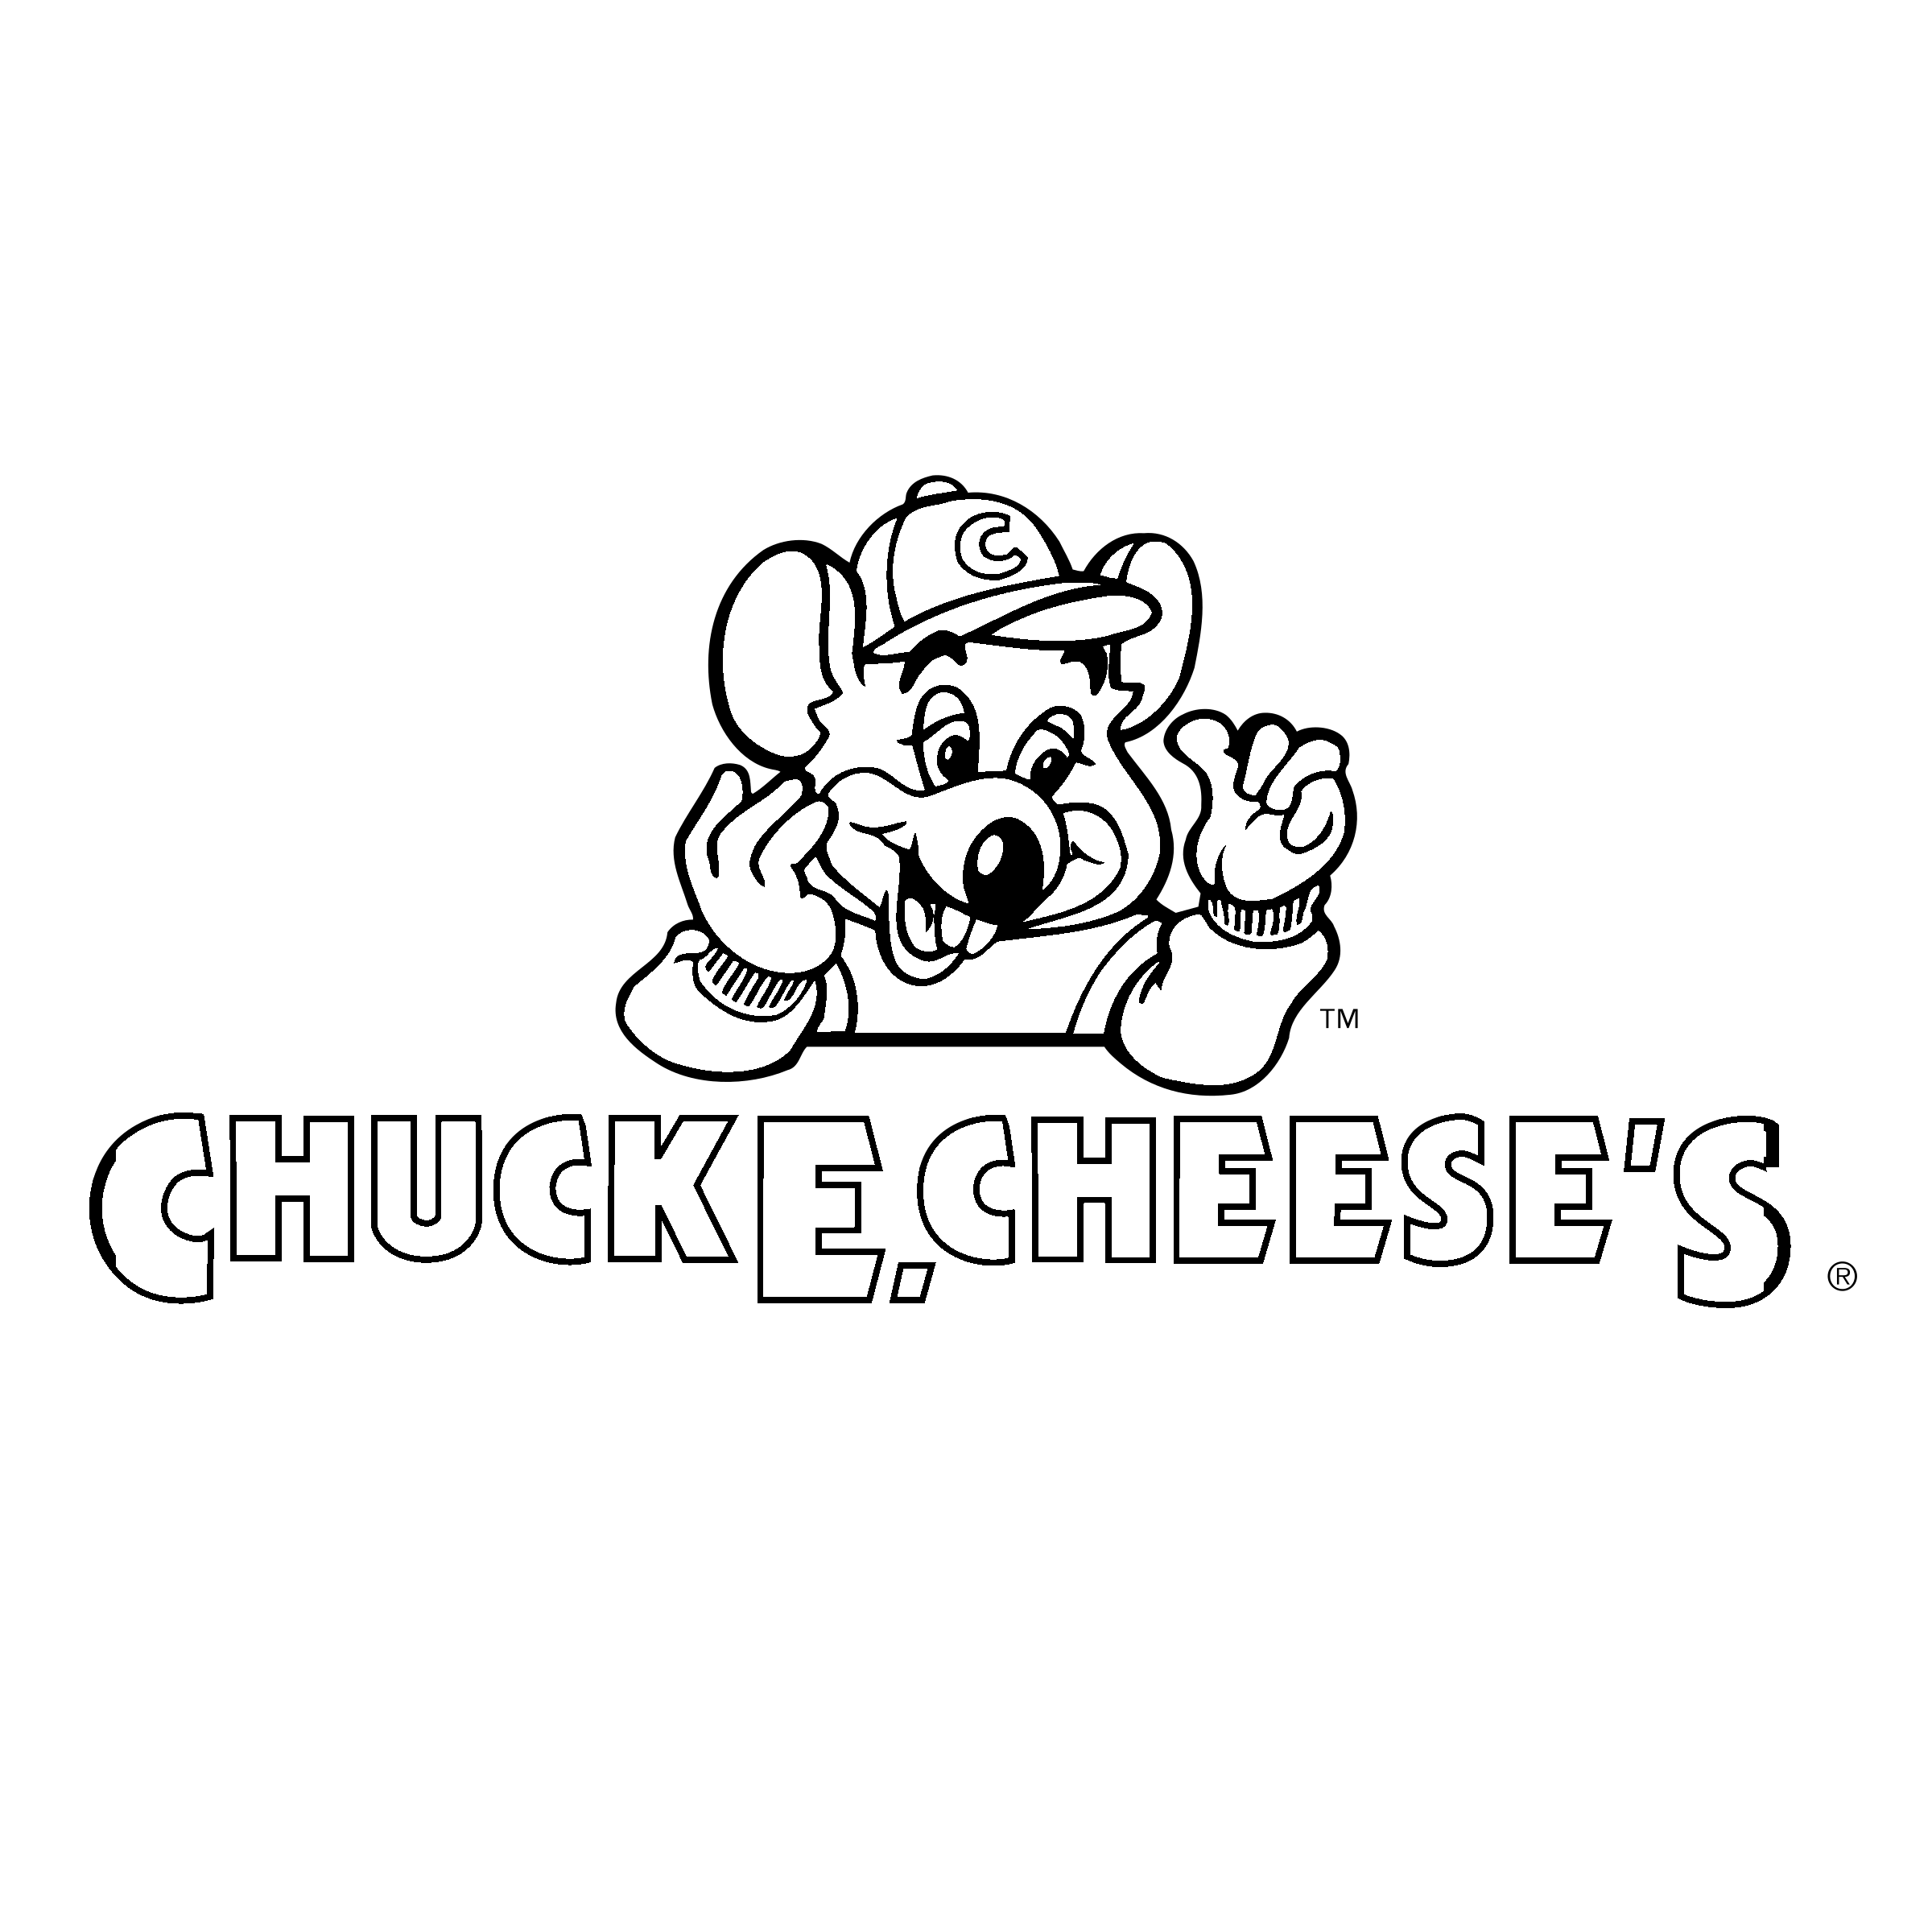 Chuck E. Cheese Logo - Chuck E Cheese's Logo PNG Transparent & SVG Vector - Freebie Supply